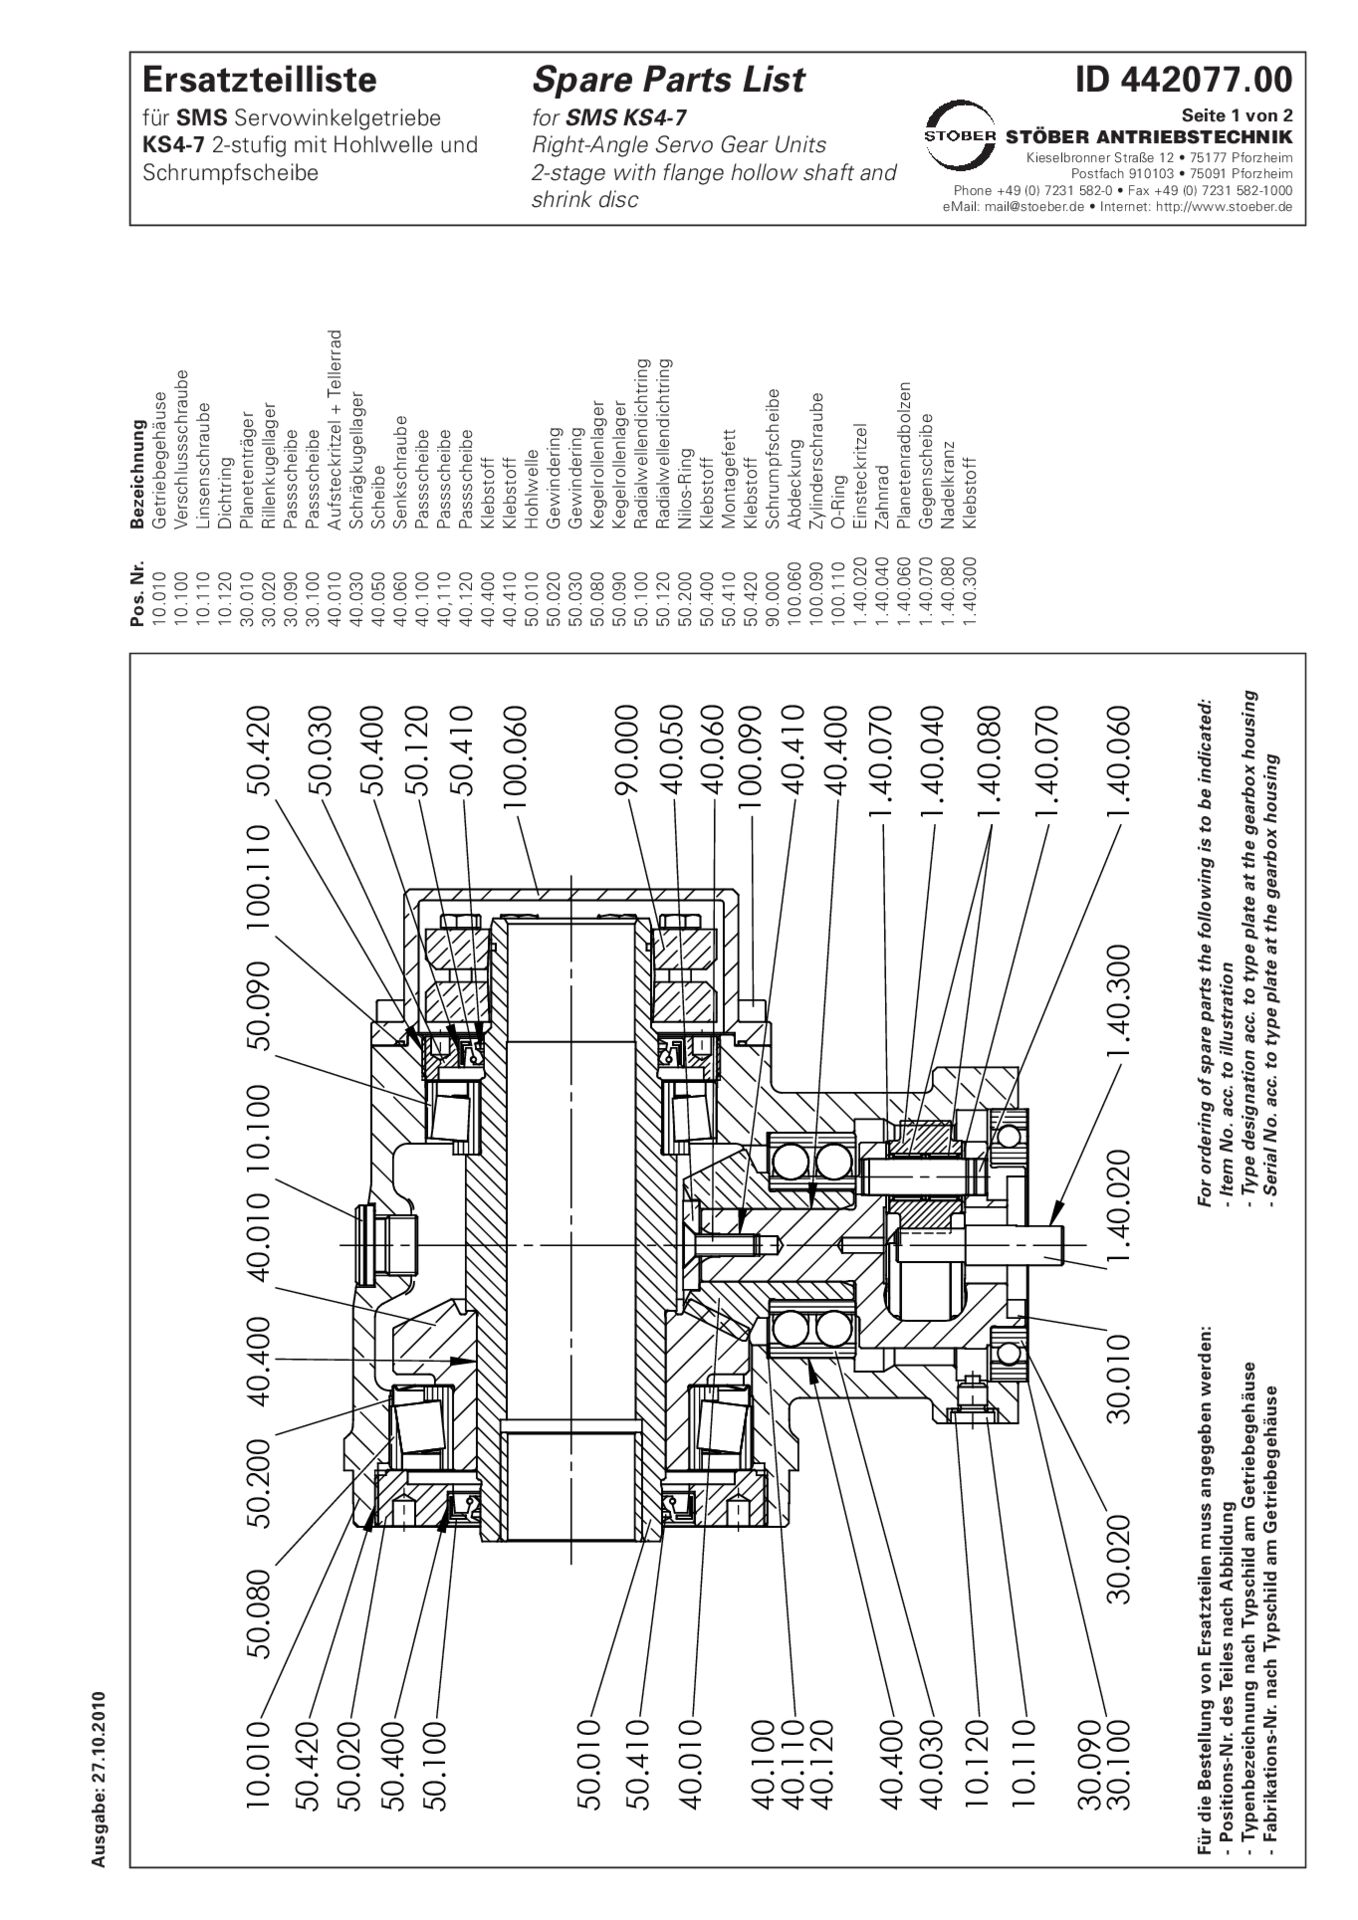 Ersatzteilliste Kegelradgetriebe KS402 KS502 KS702 2-stufig mit Hohlwelle und Schrumpfscheibe für SMS-Getriebe